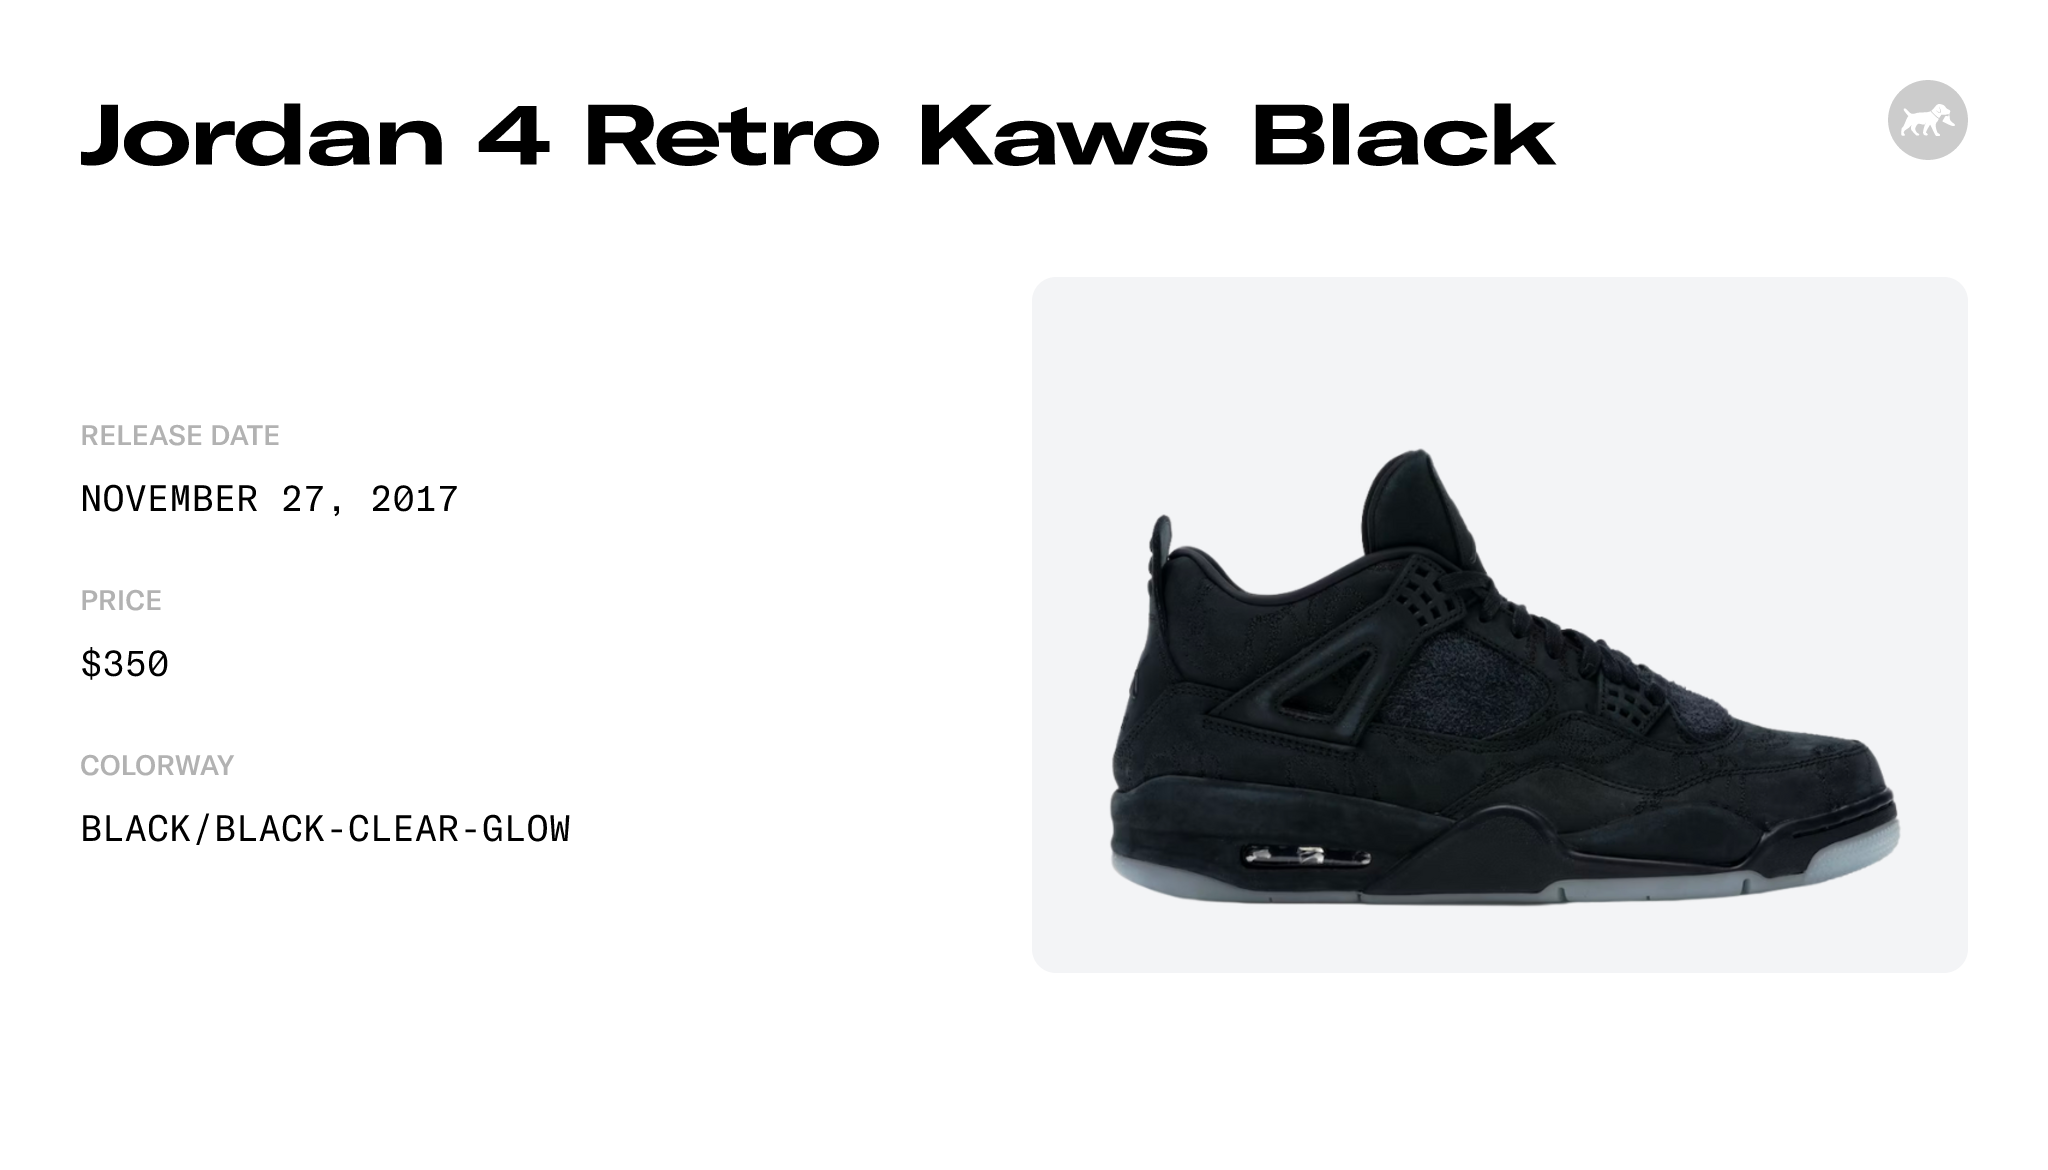 Jordan 4 Retro Kaws Black - 930155-001 Raffles and Release Date